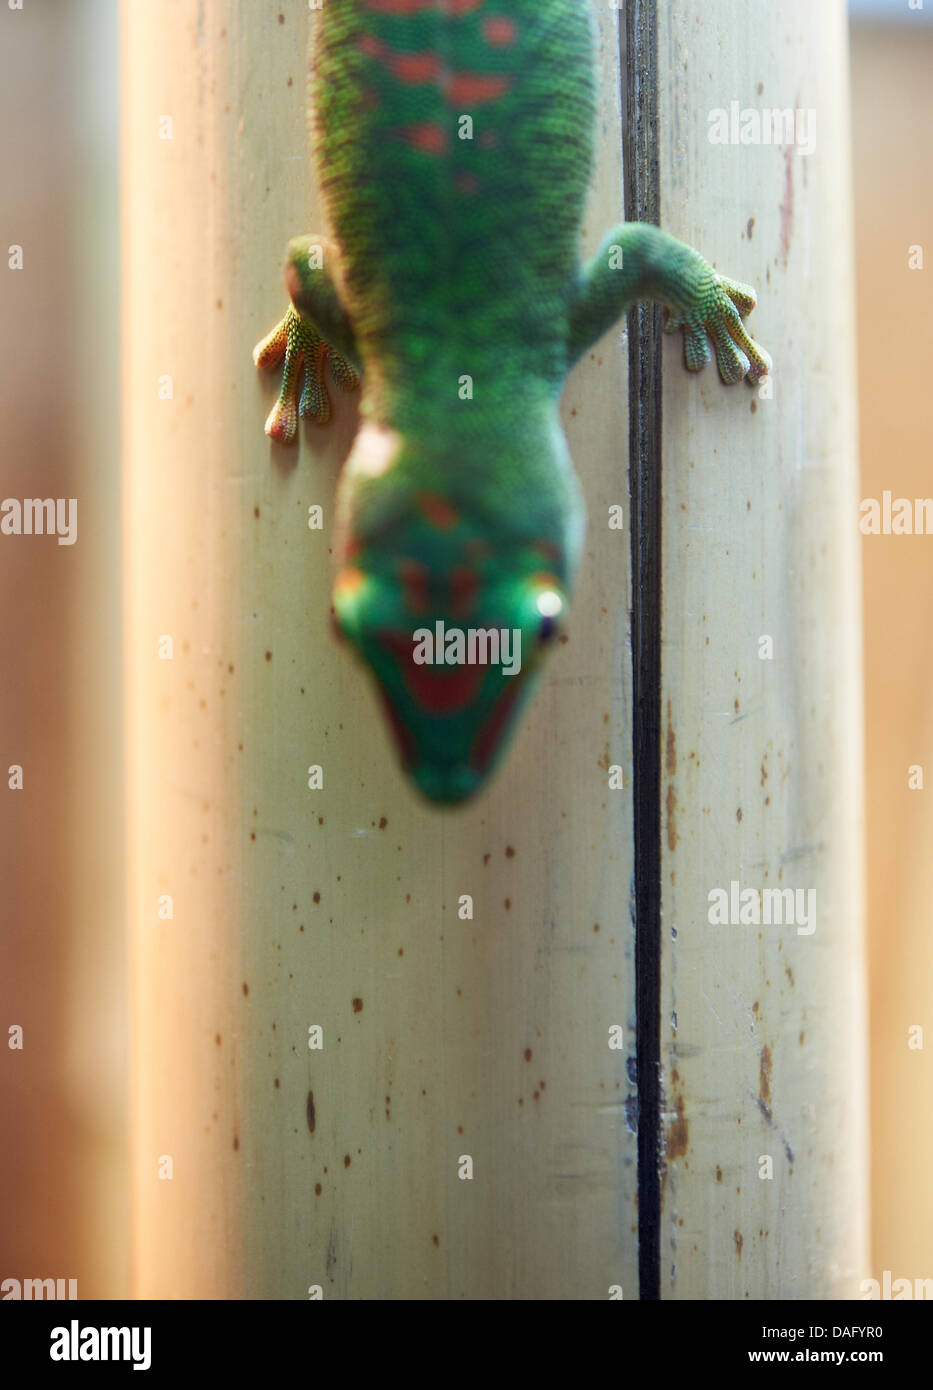 Un Madagascar day gecko (lat.: Phelsuma madagascariensis) Foto durante la exposición 'Nano! Uso y visiones de una nueva tecnología" en Dortmund, Alemania, el 25 de febrero de 2011. Foto: Bernd Thyssen Foto de stock